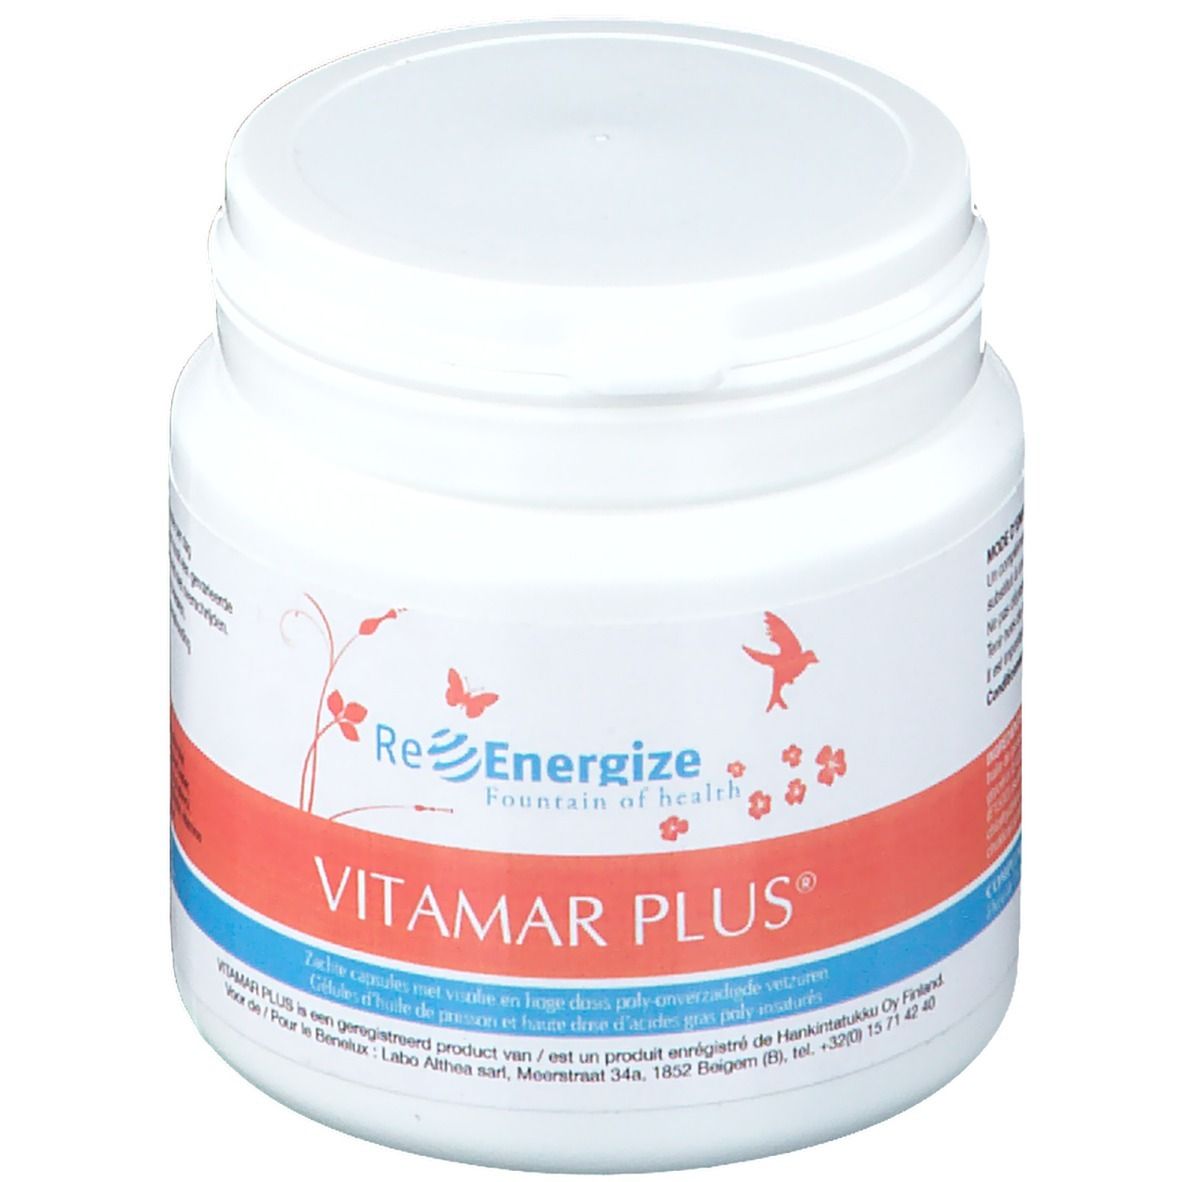 D-line Vitamar Plus®